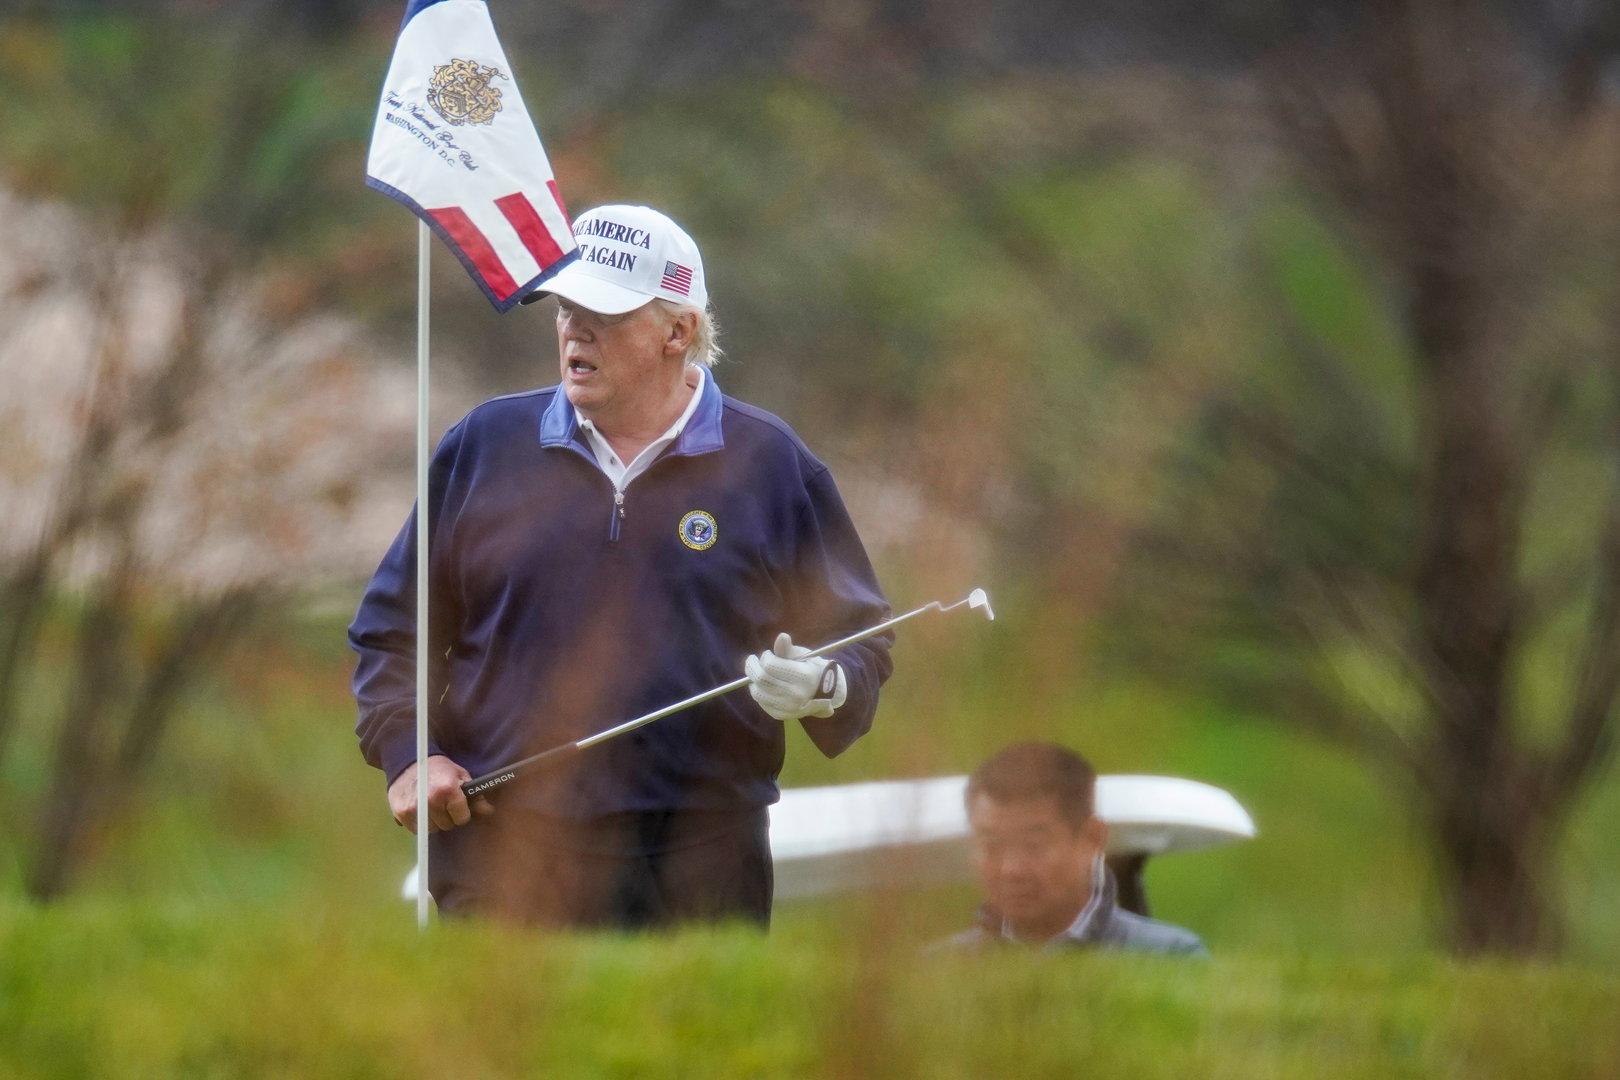 Imageschaden: Verband verlegt Golf-Turnier wegen Donald Trump